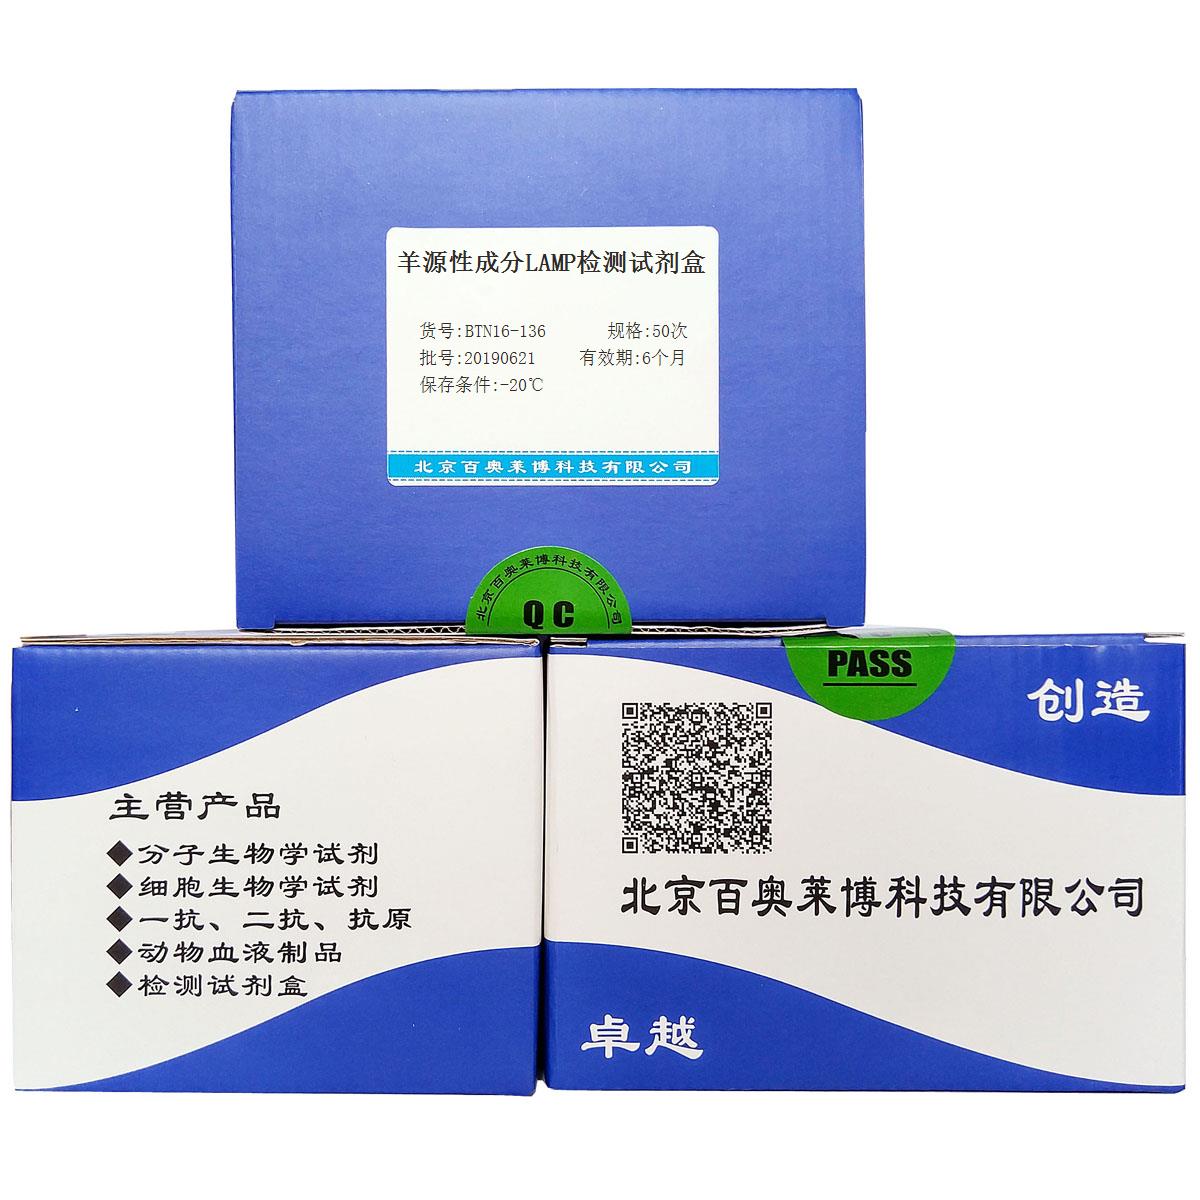 羊源性成分LAMP检测试剂盒北京供应商